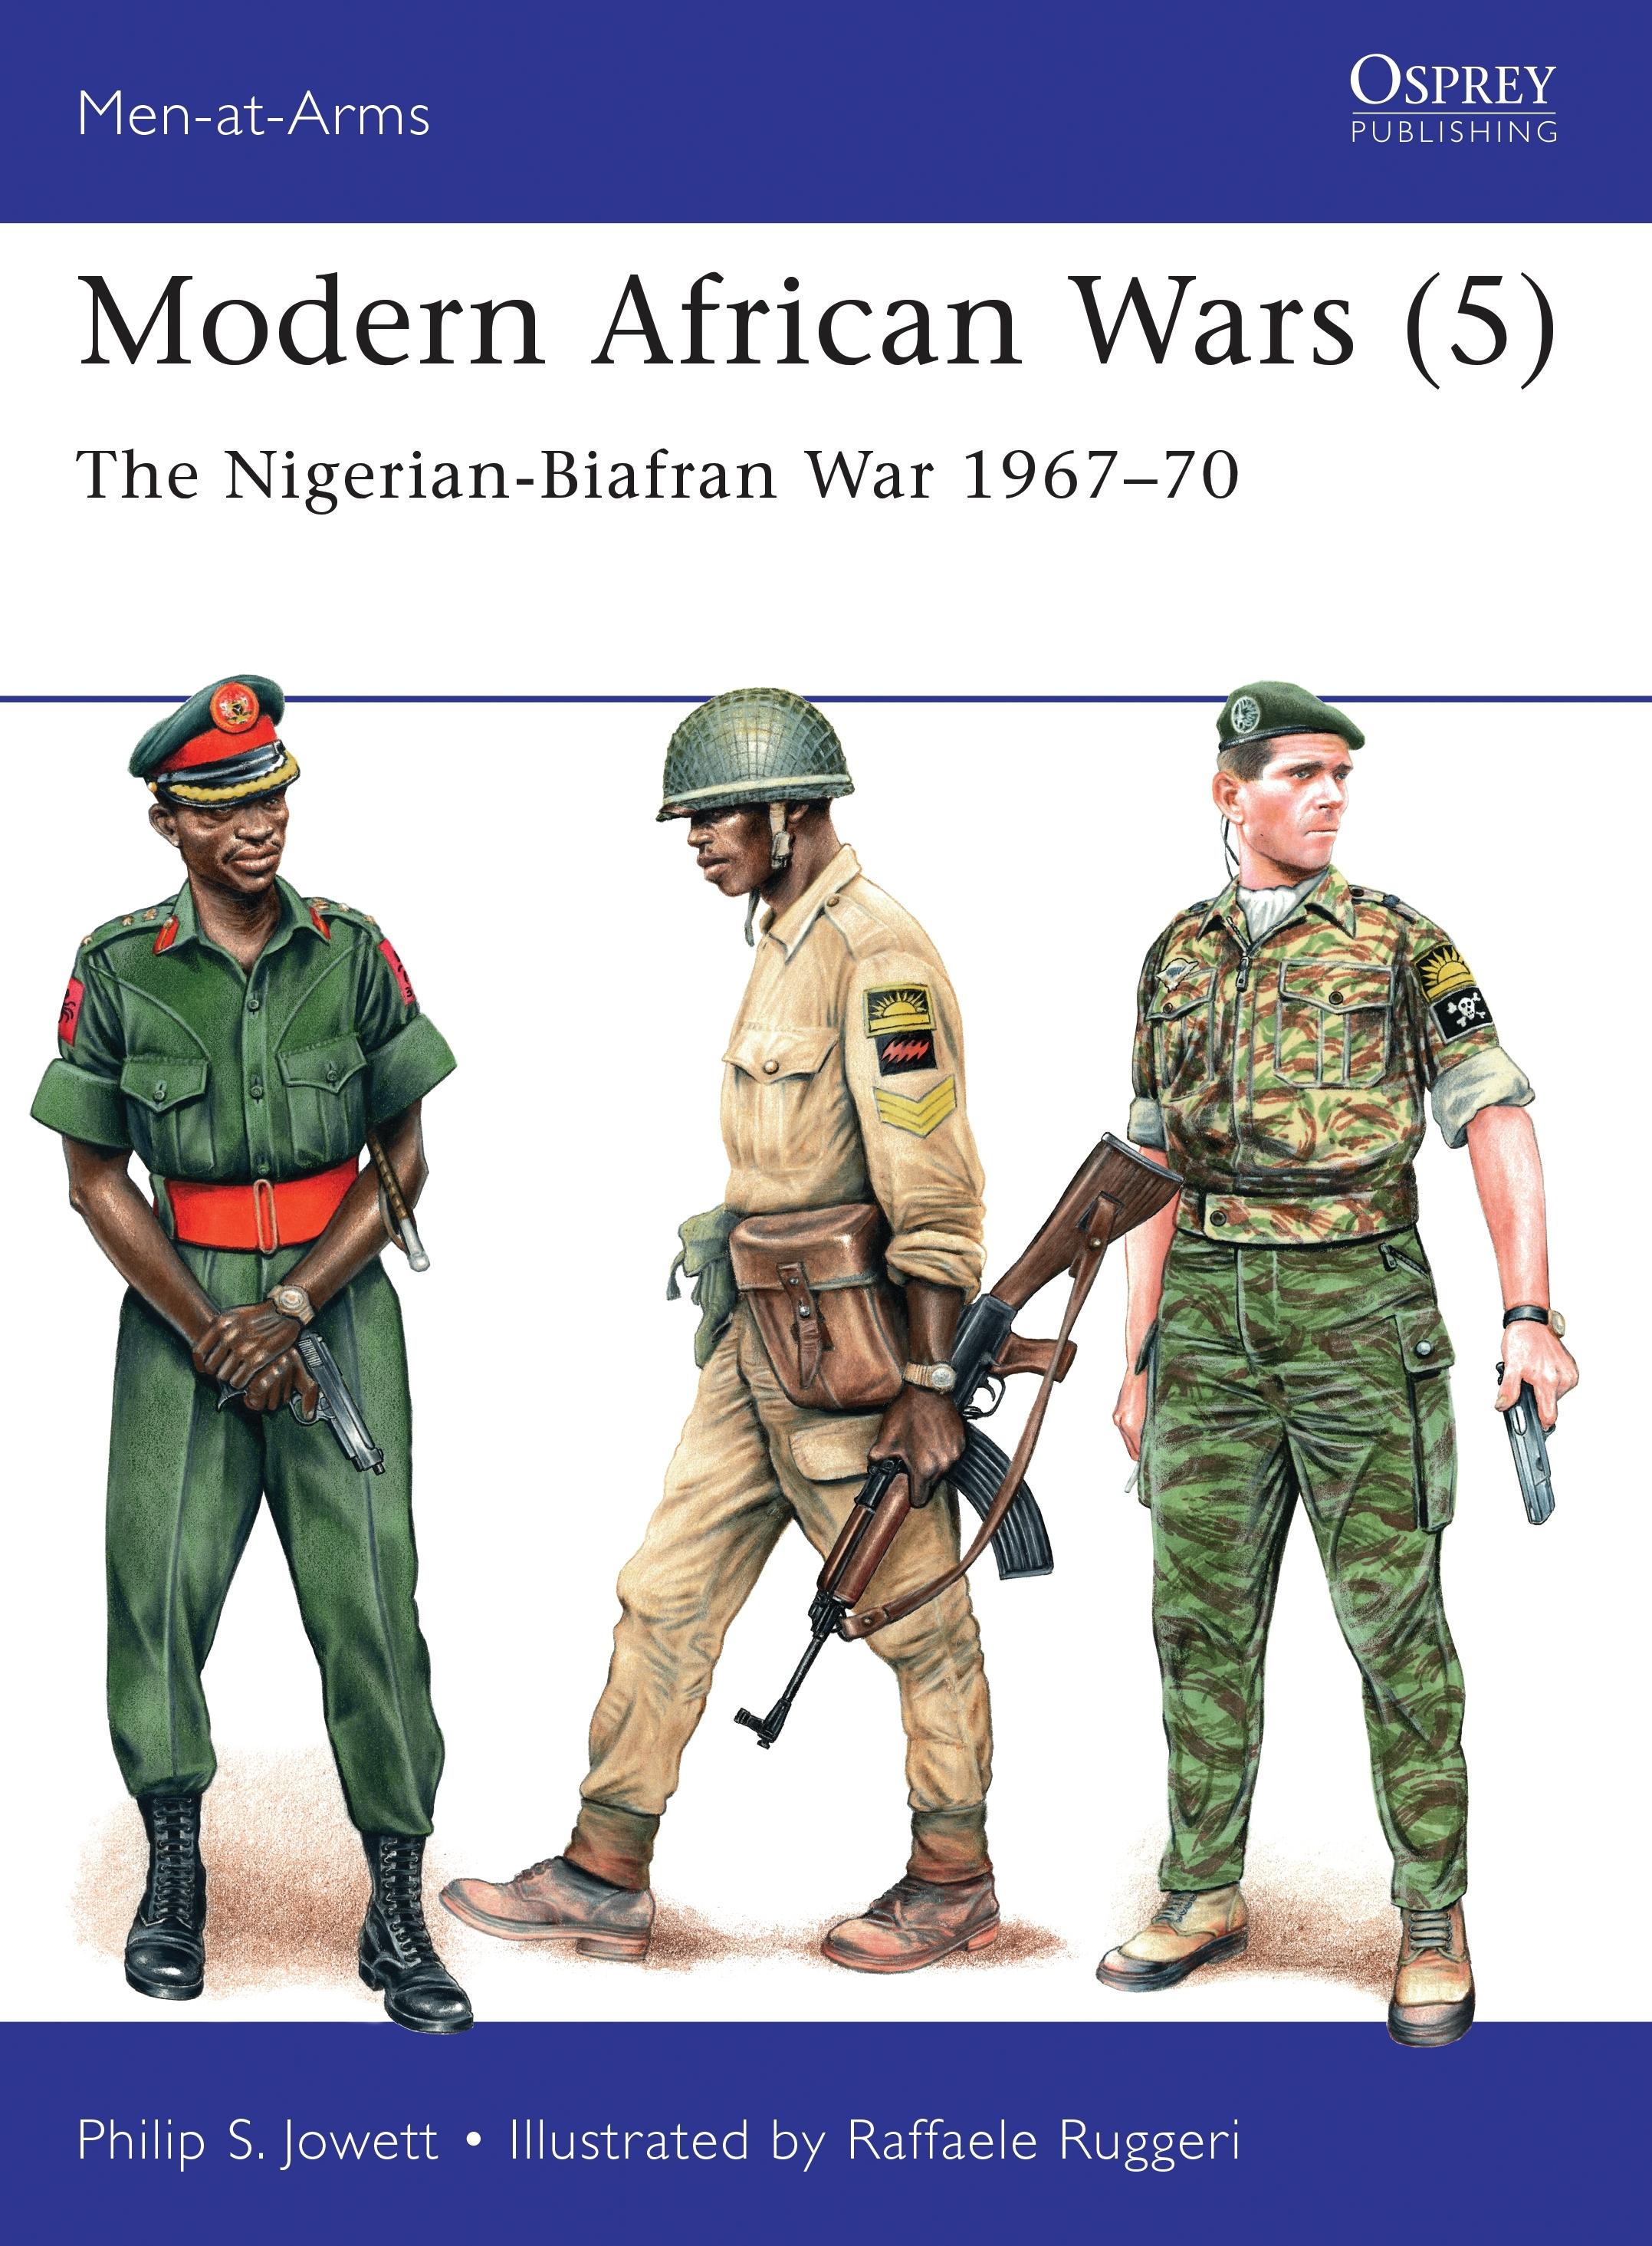 Modern African Wars (5) / The Nigerian-Biafran War 1967-70 / Philip Jowett / Taschenbuch / Kartoniert / Broschiert / Englisch / 2016 / Bloomsbury Publishing PLC / EAN 9781472816092 - Jowett, Philip